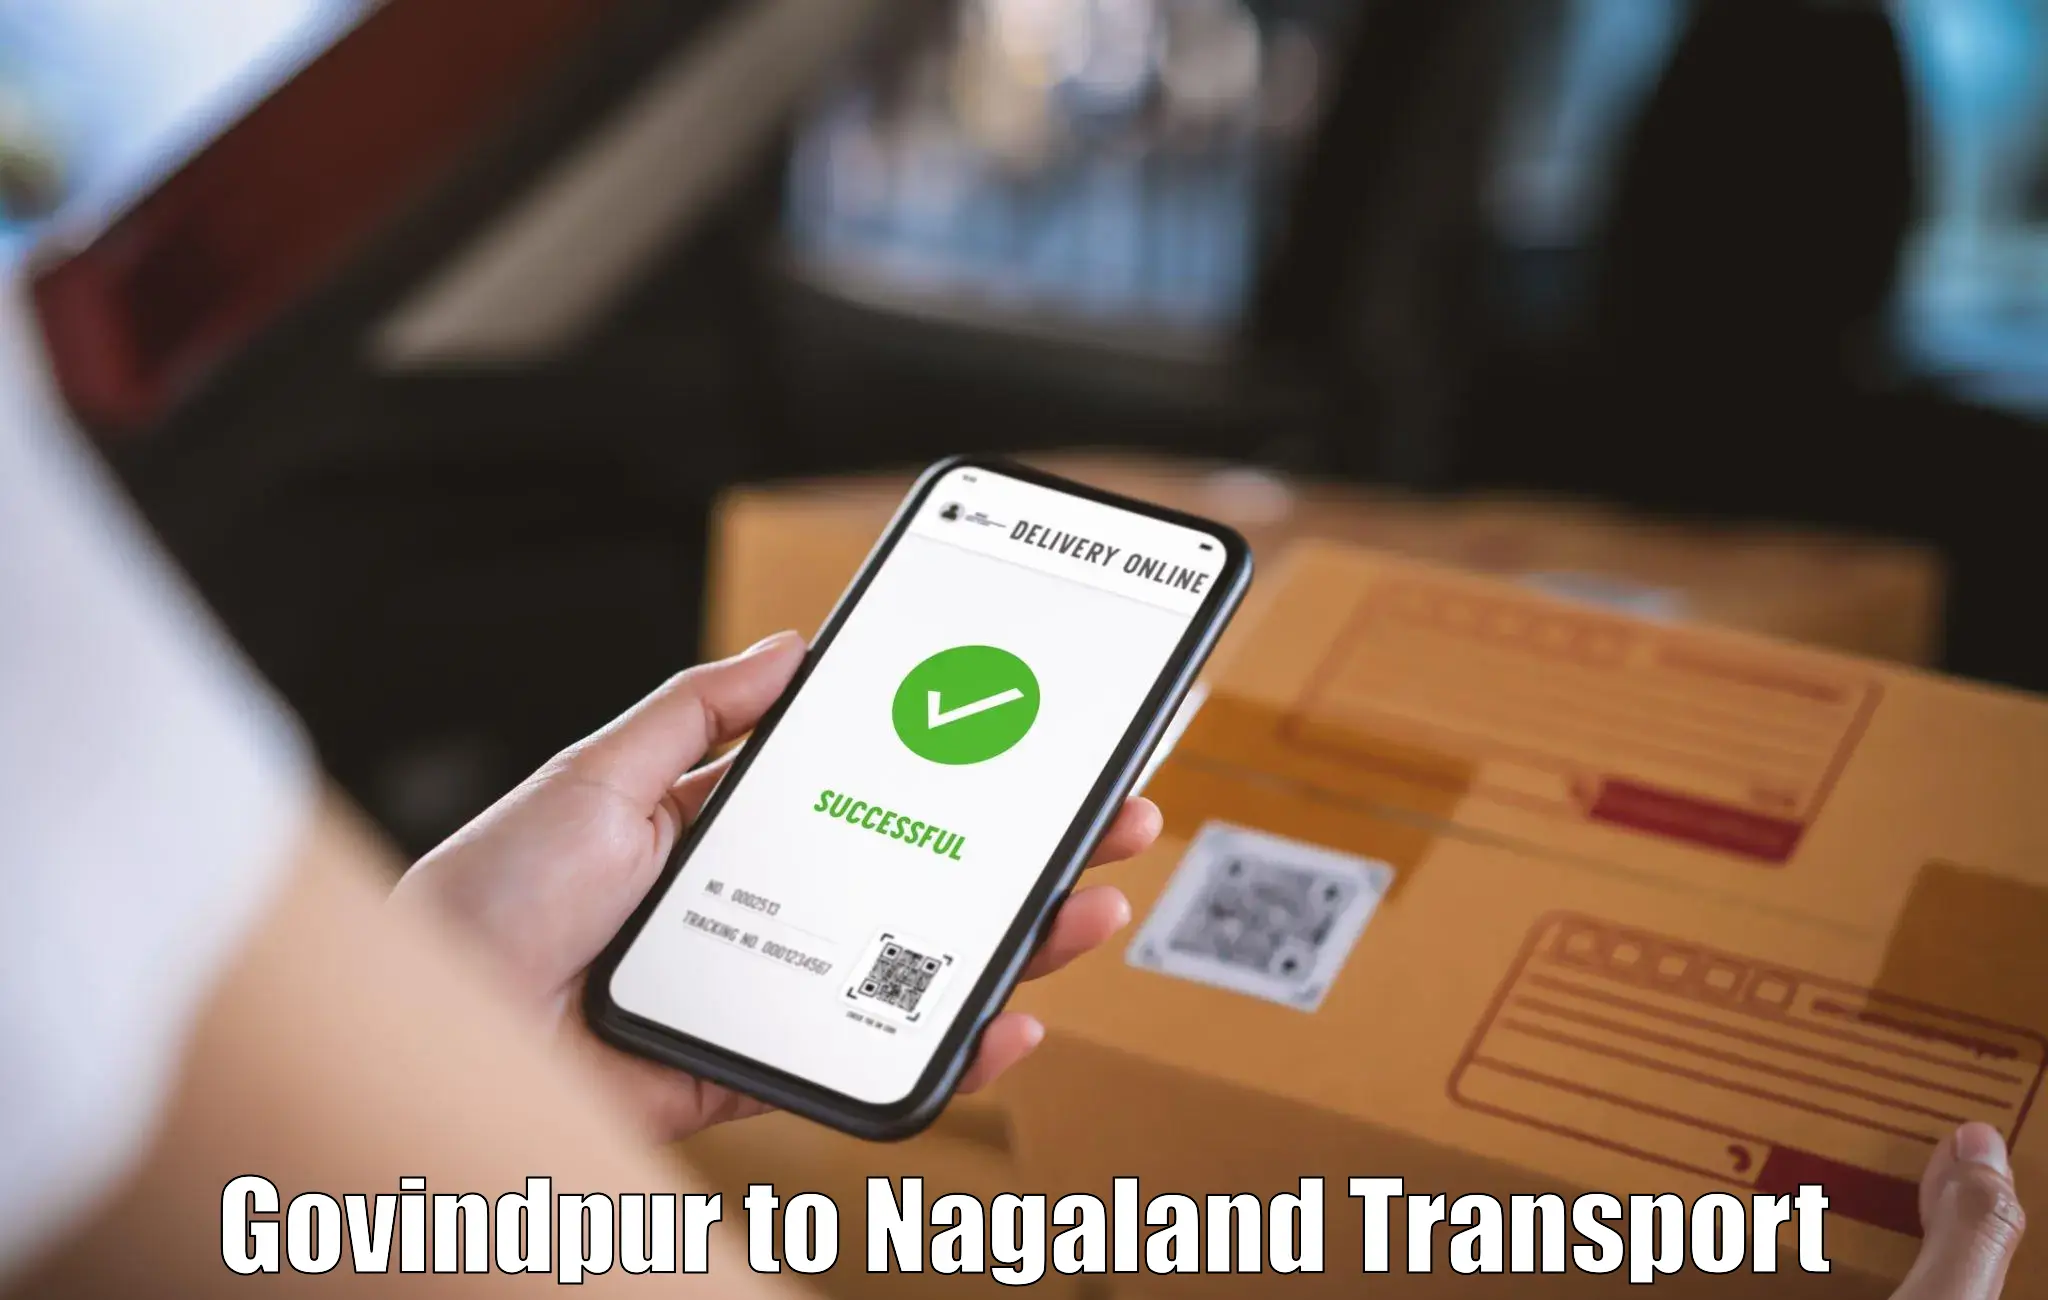 Commercial transport service Govindpur to Longleng